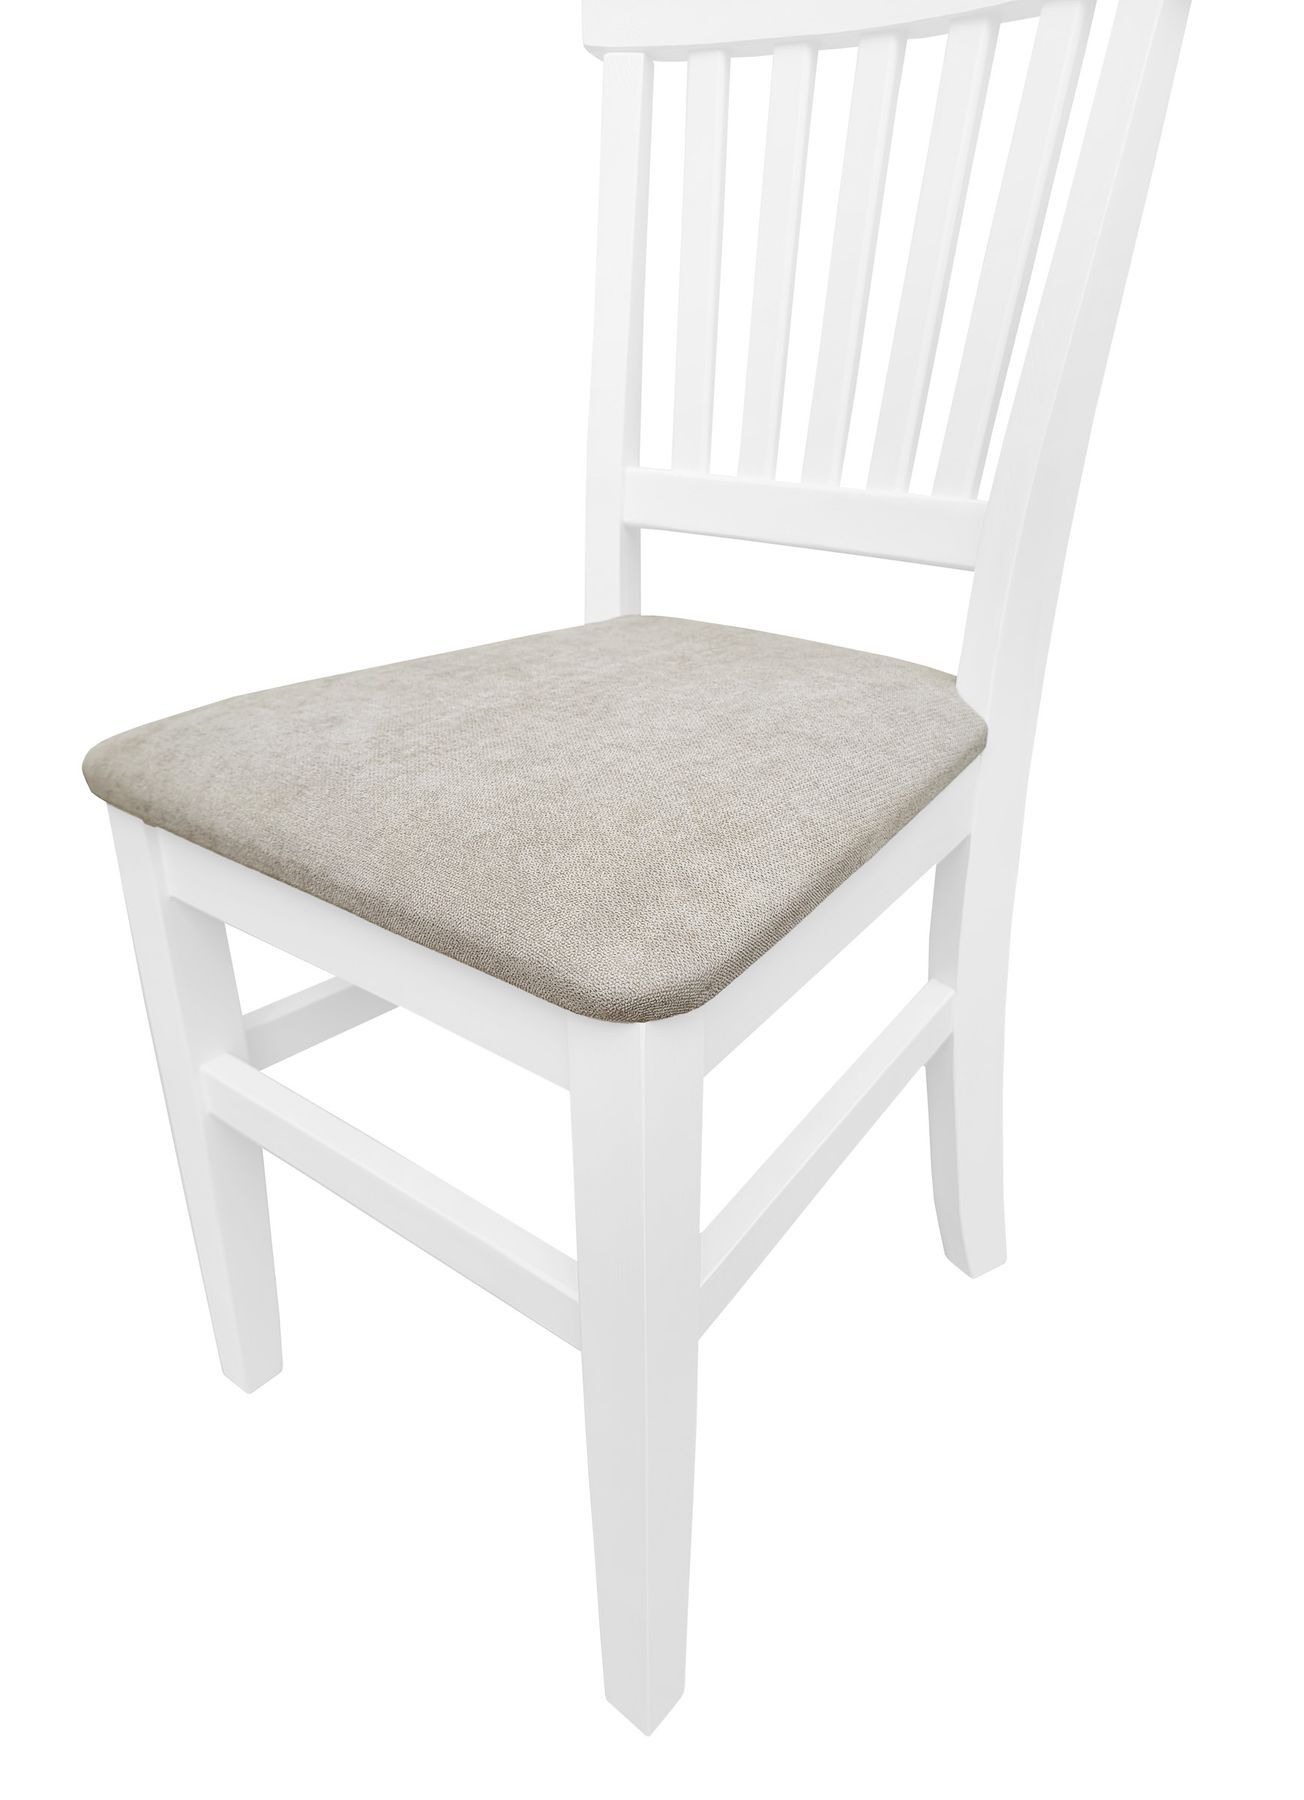 Due varianti x lineare design per sedia bianco acqua in Pino per cucina e sala V-90.71-27W-P03